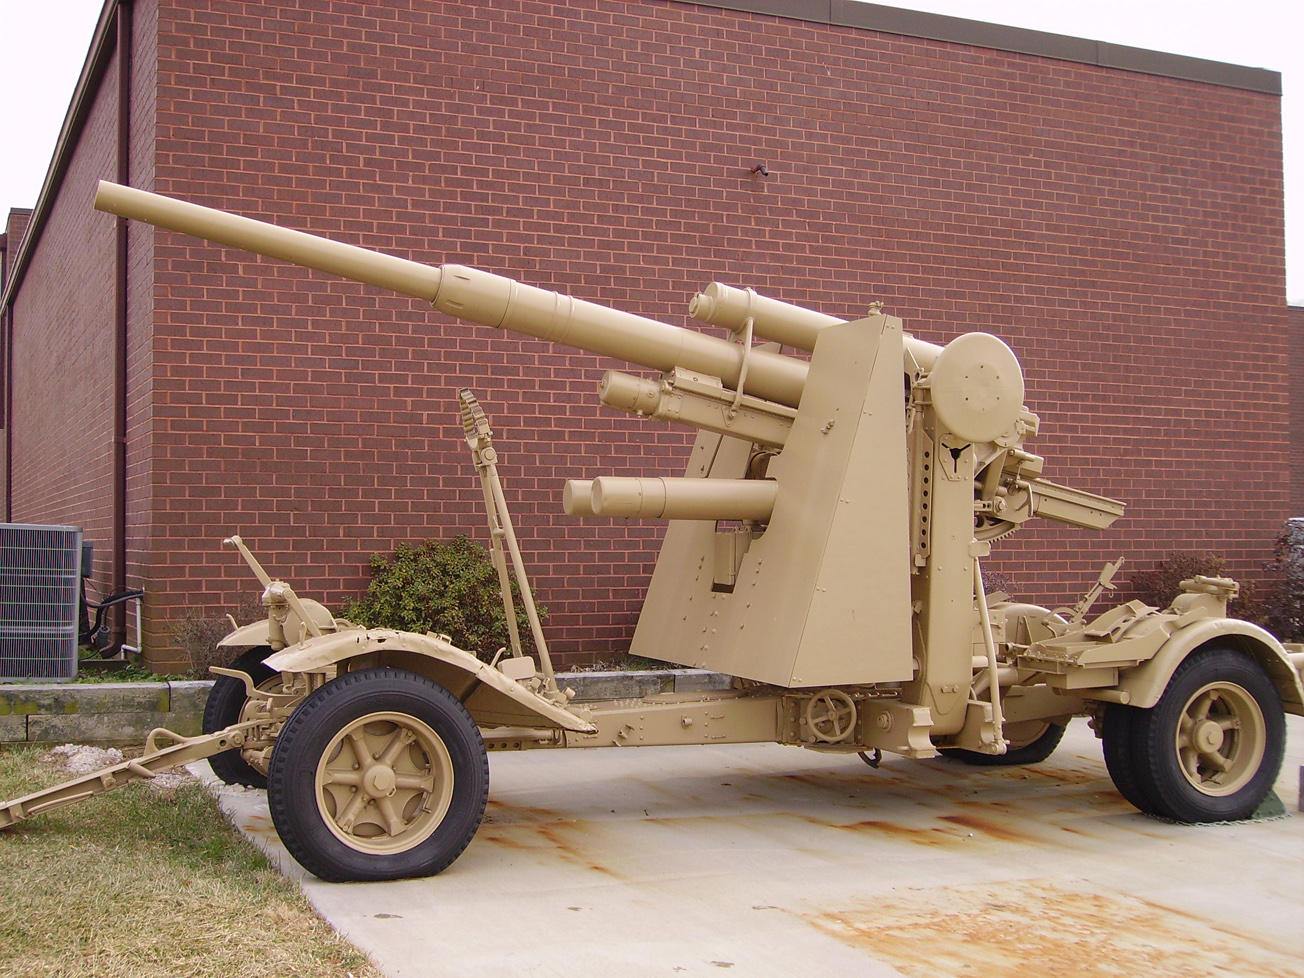 Пушка flak 88 мм